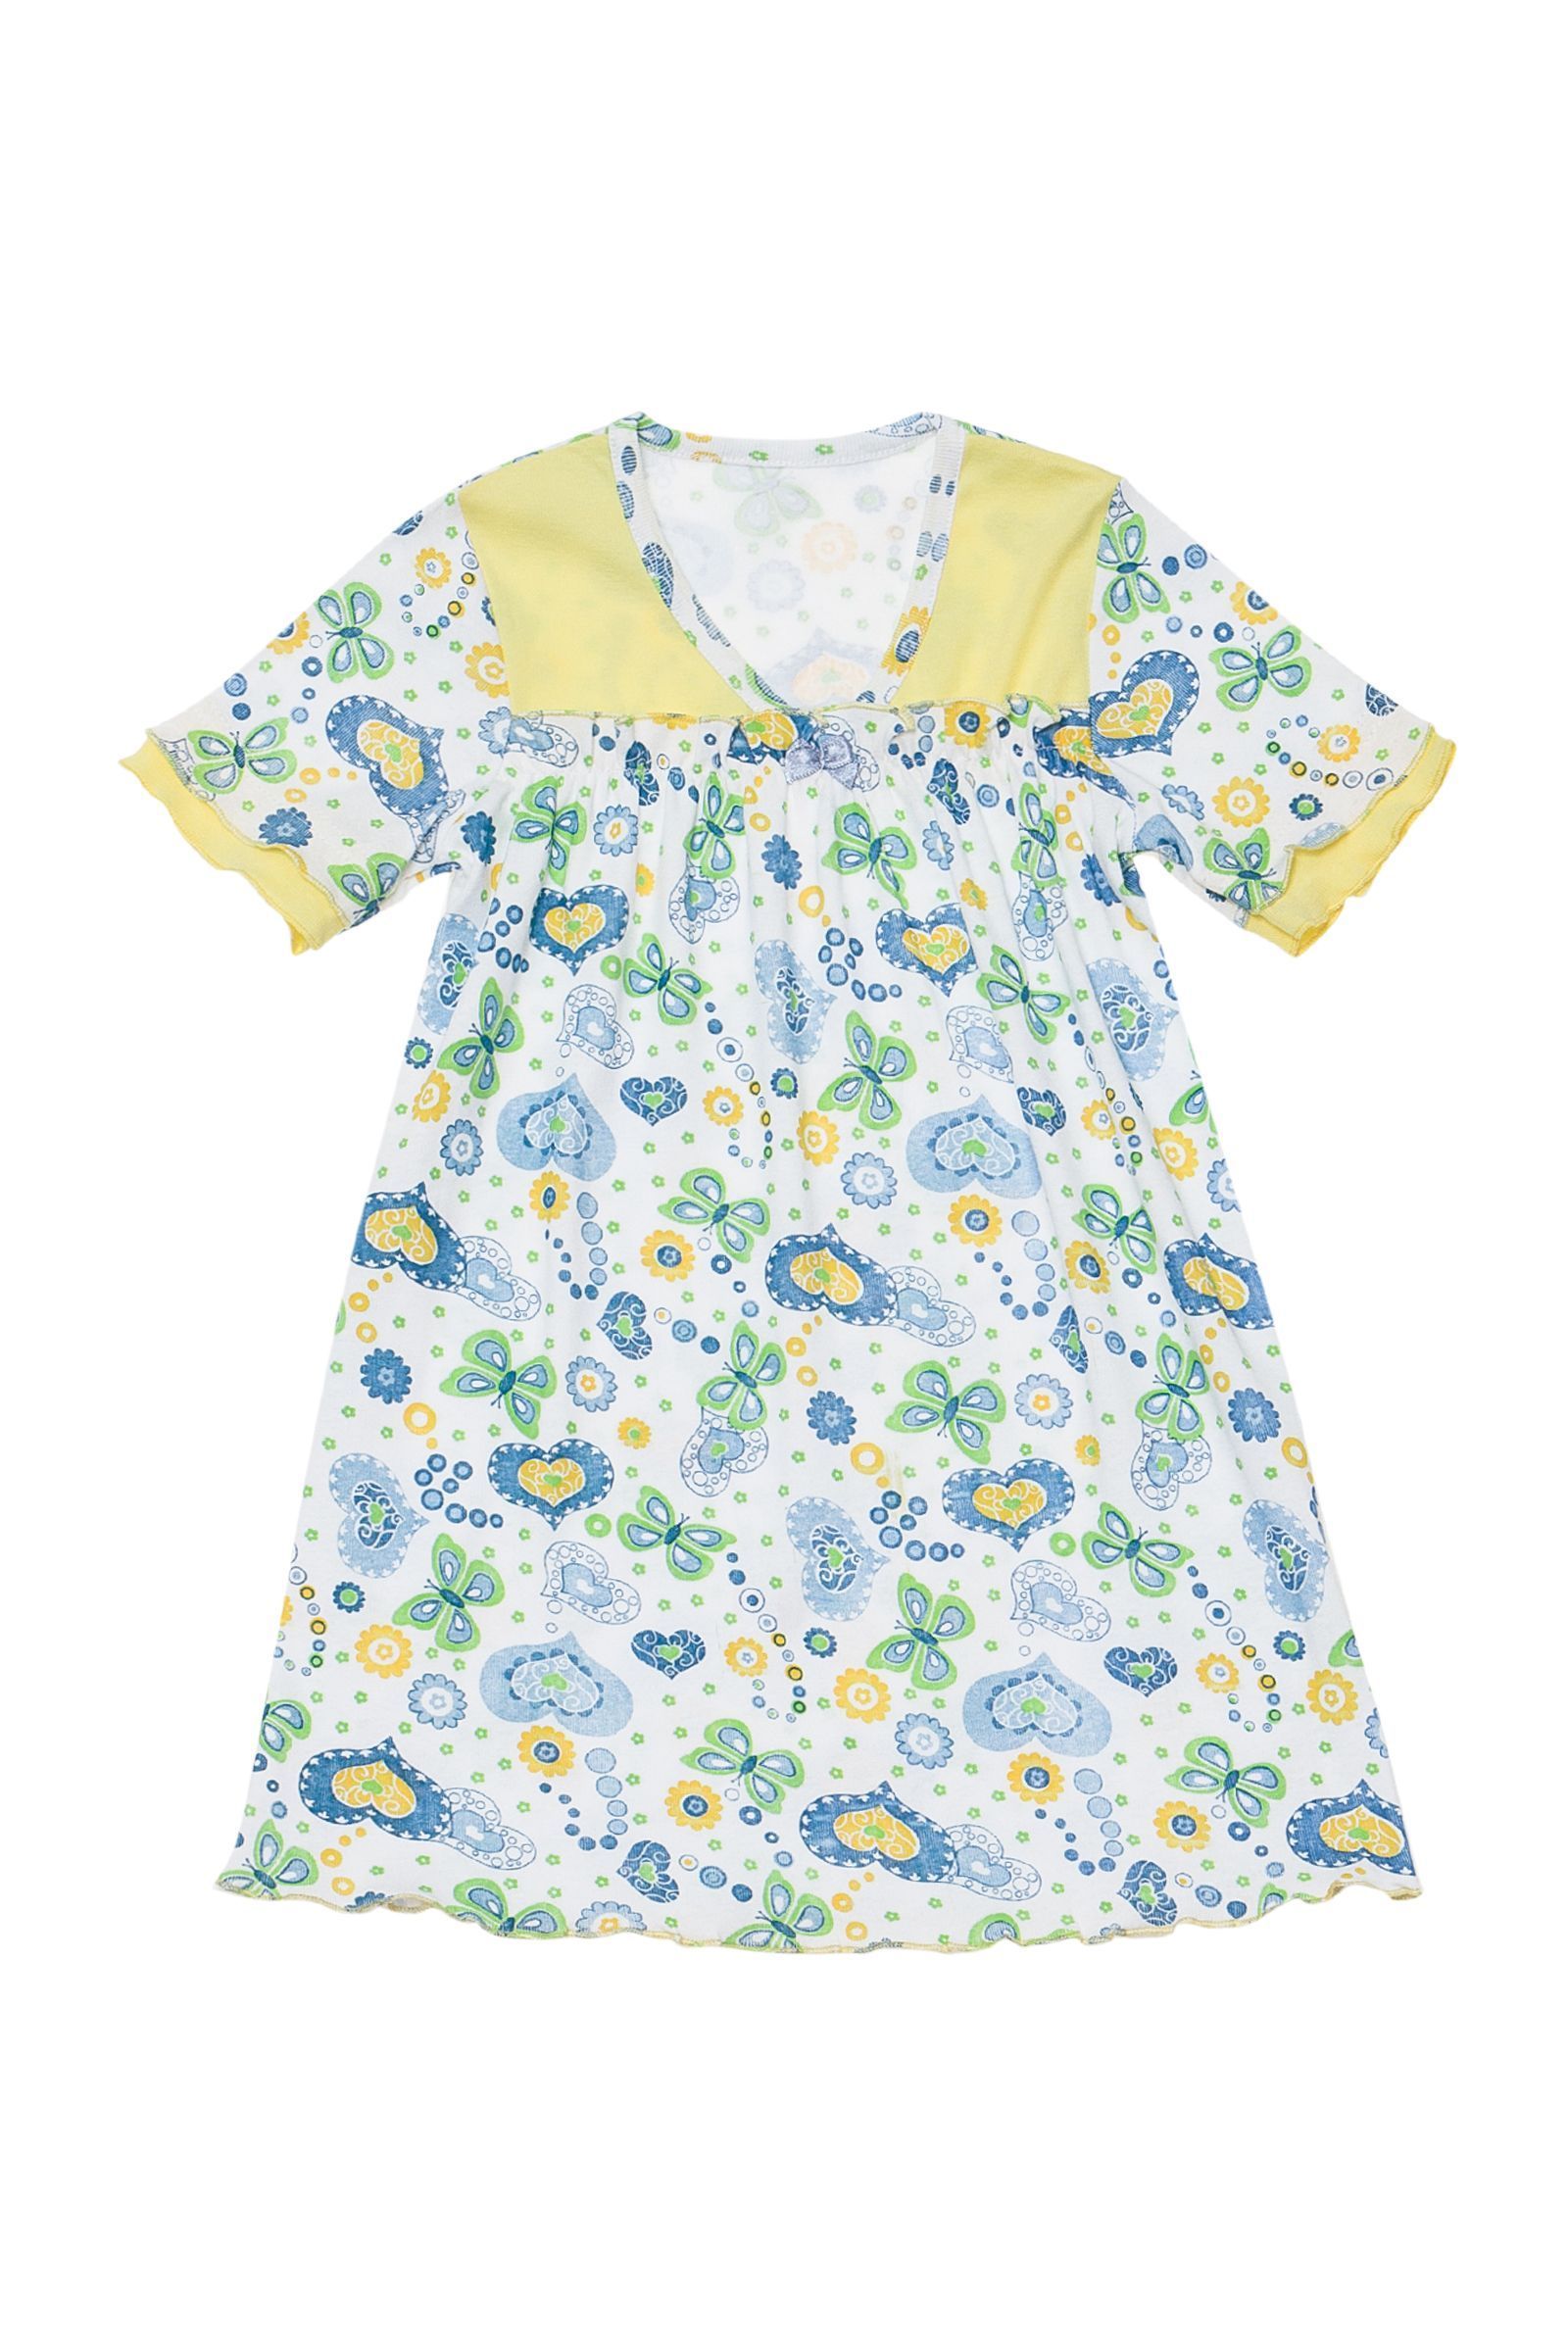 Ночная сорочка-СР03-616 оптом от производителя детской одежды 'Алёна'